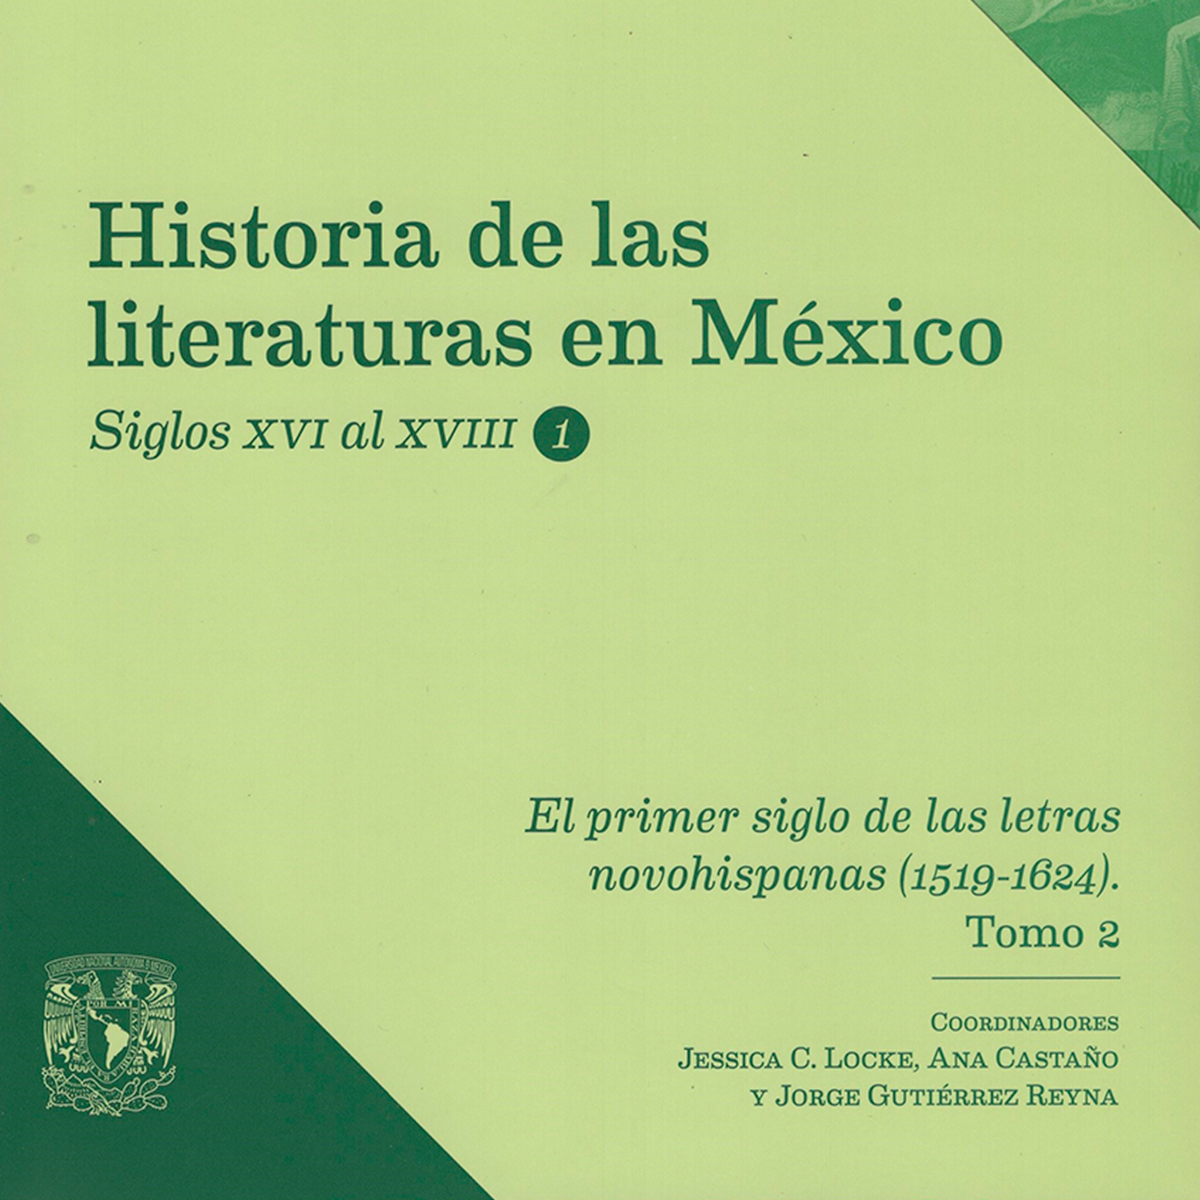 EL PRIMER SIGLO DE LAS LETRAS NOVOHISPANAS (1519-1624) TOMO 2